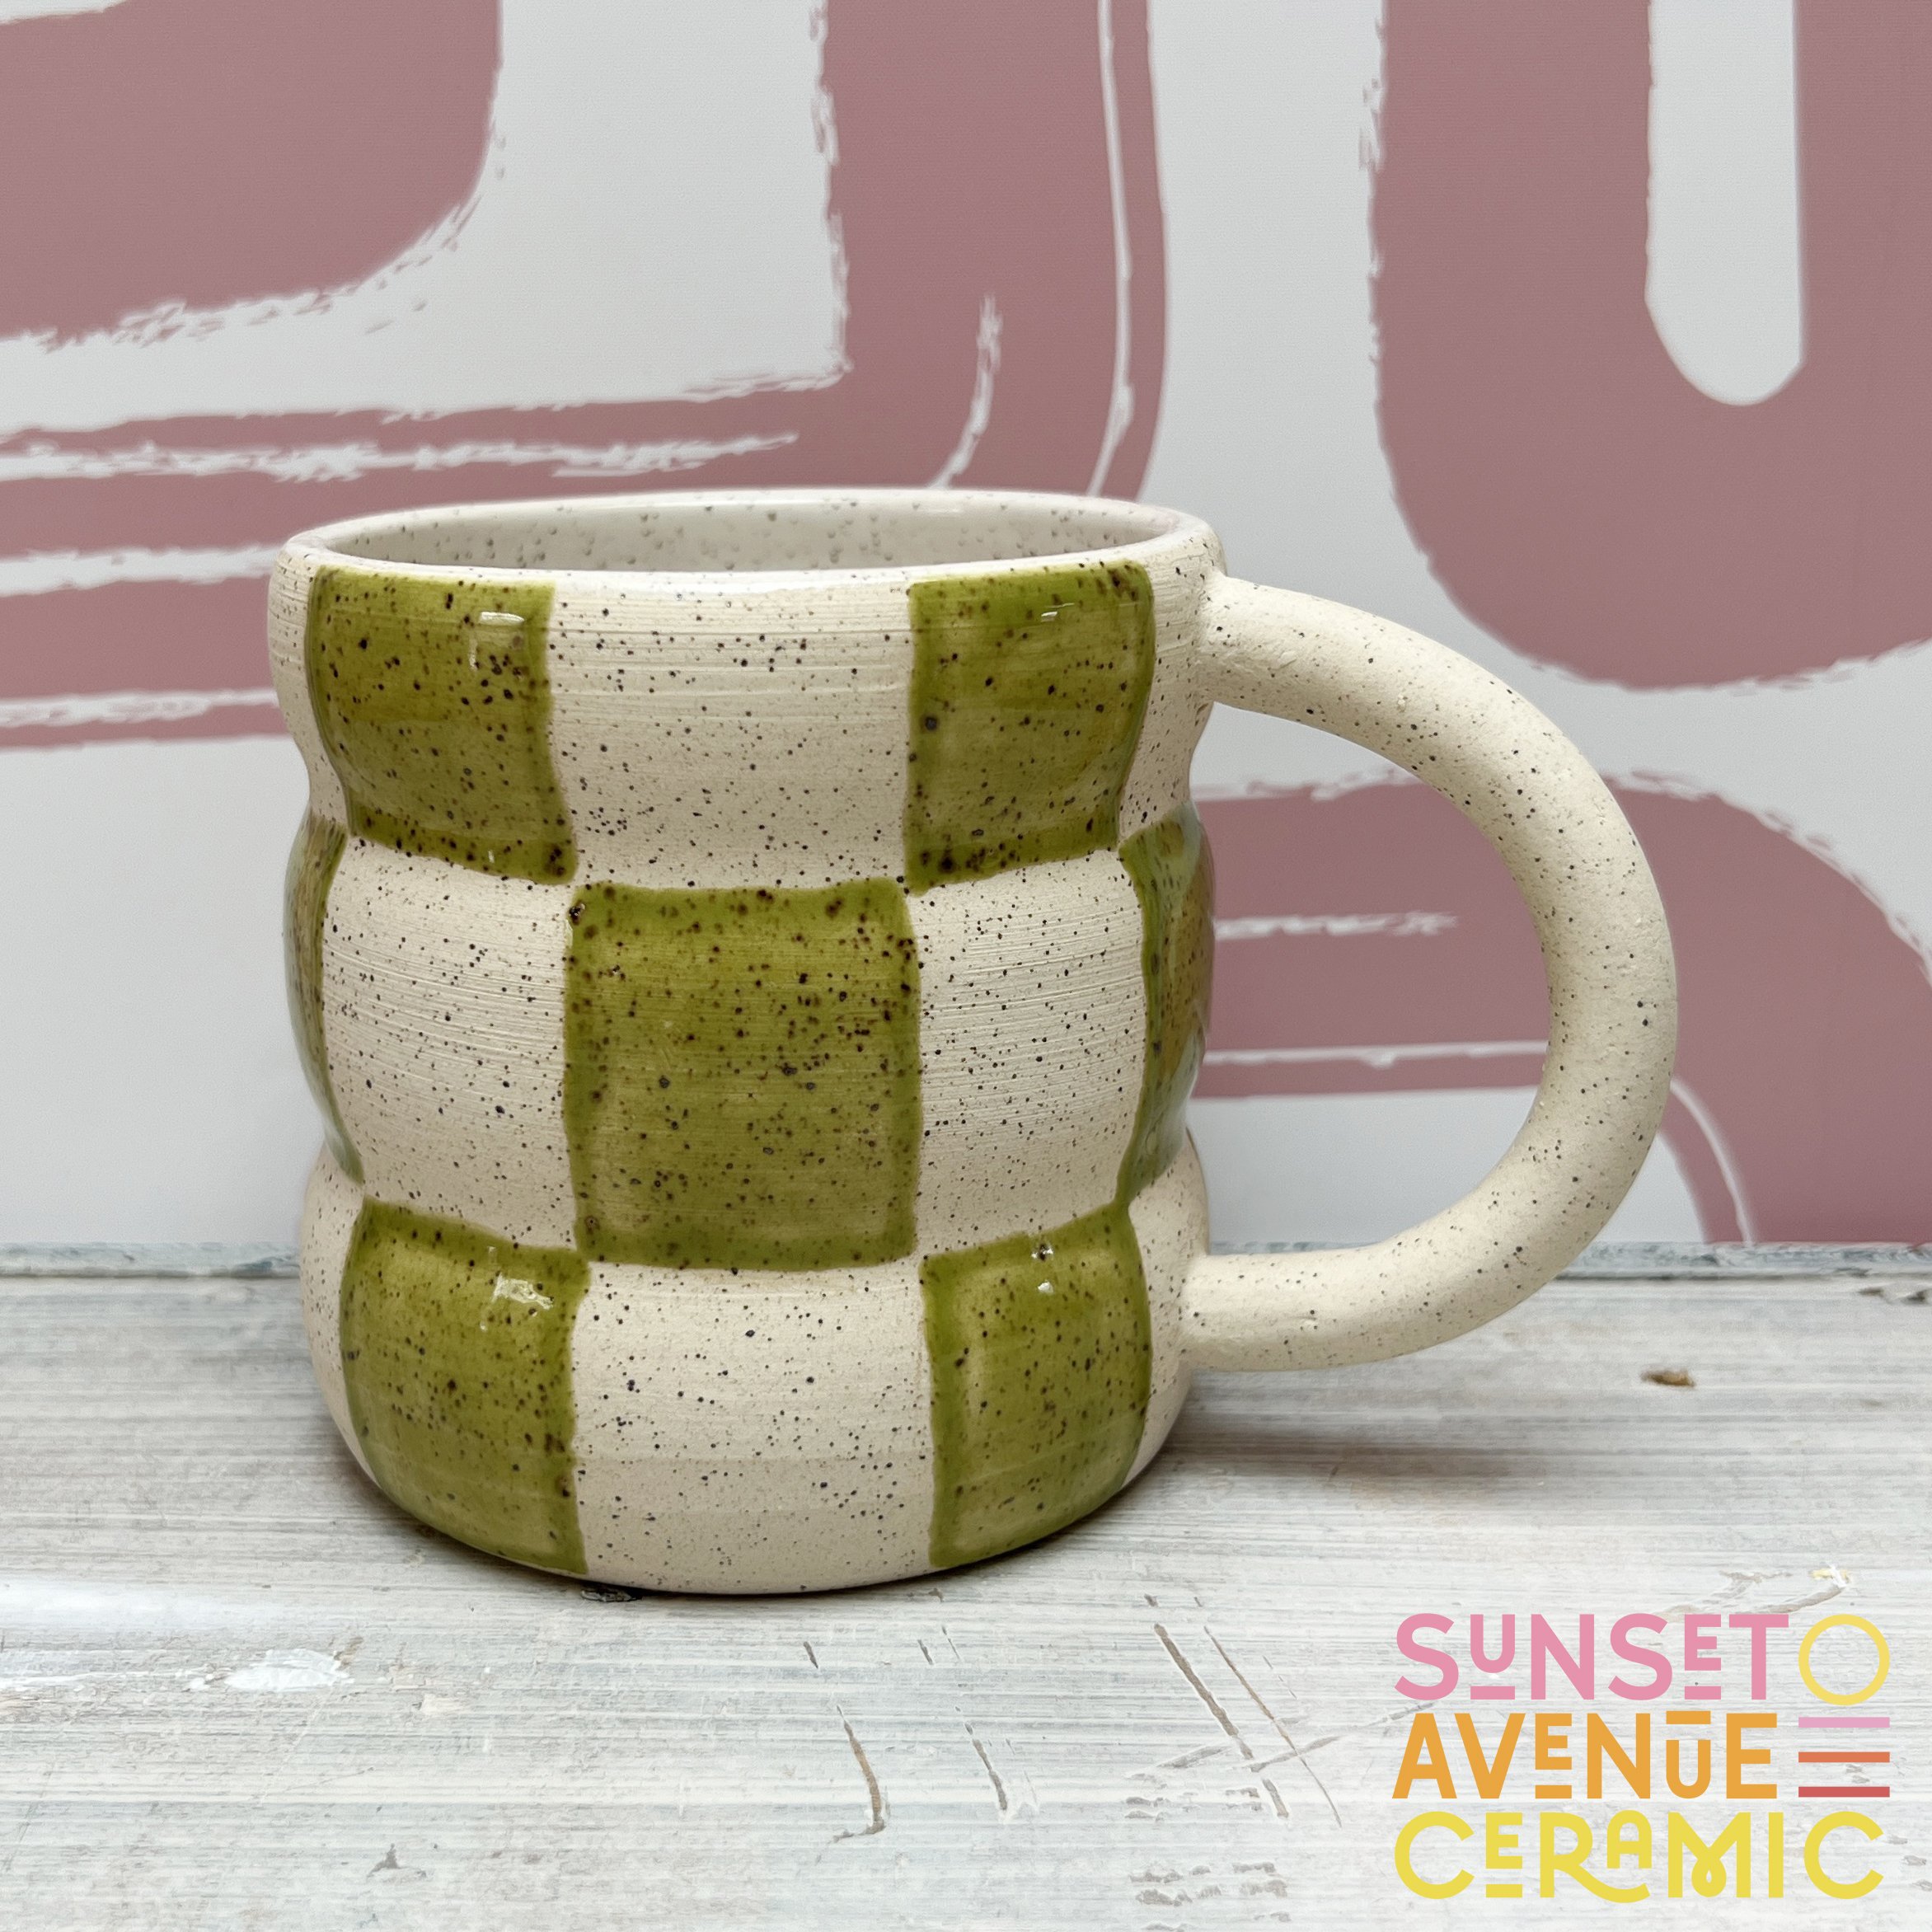 Sunset Avenue Ceramic